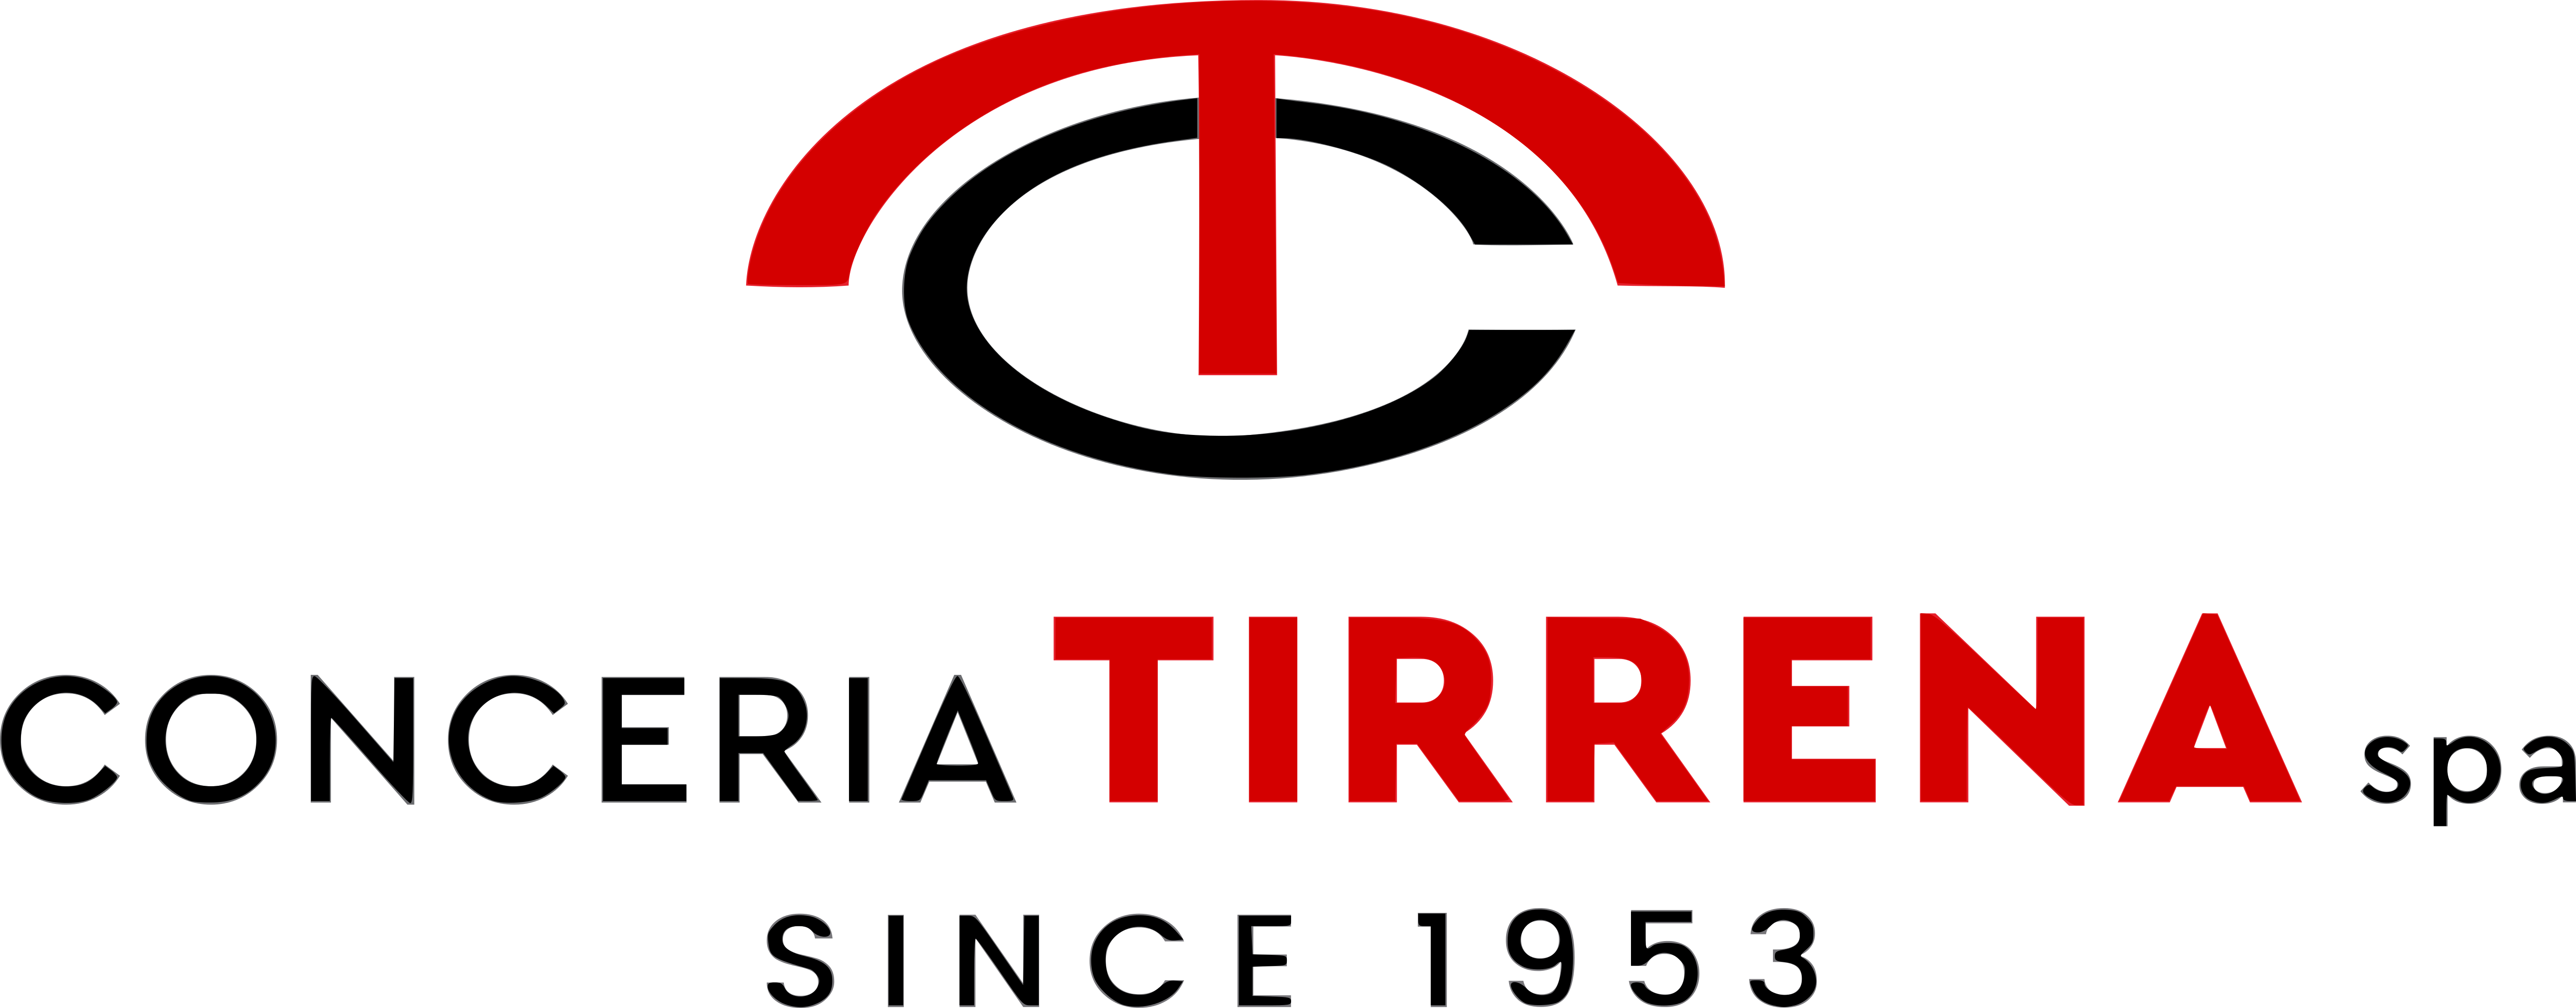 CONCERIA TIRRENA - Logo Rosso (1)